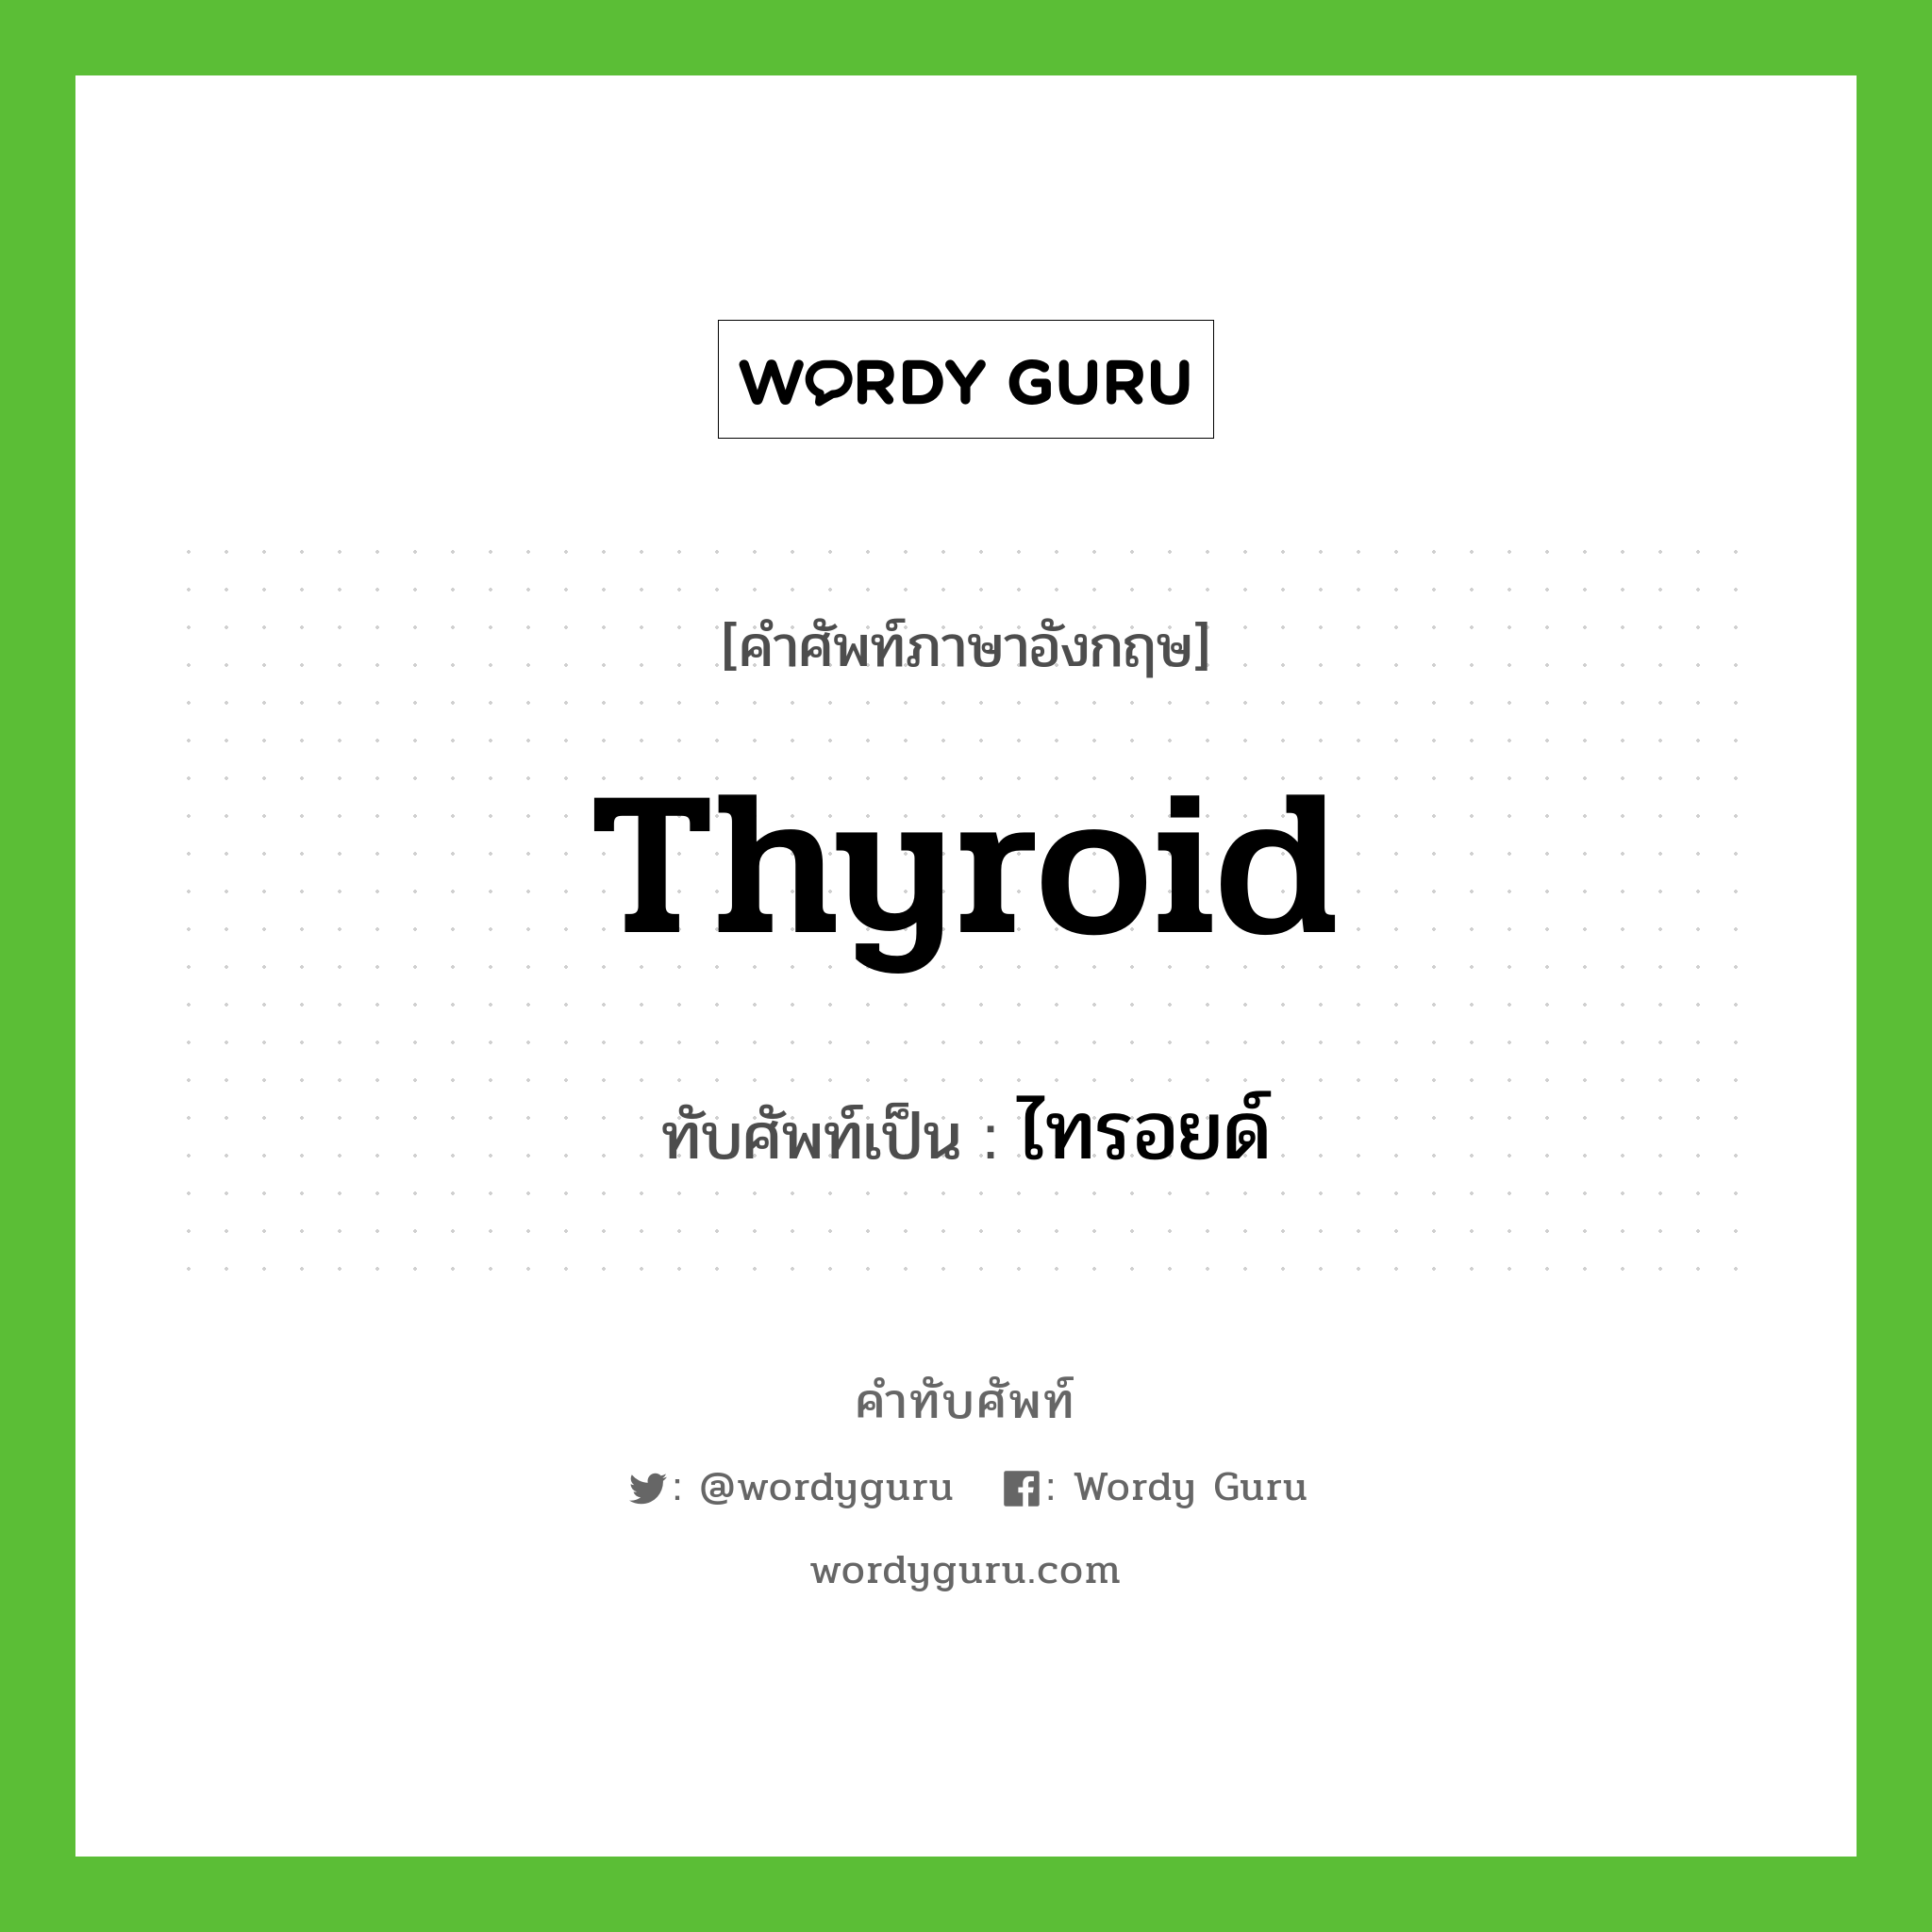 ไทรอยด์ เขียนอย่างไร?, คำศัพท์ภาษาอังกฤษ ไทรอยด์ ทับศัพท์เป็น thyroid